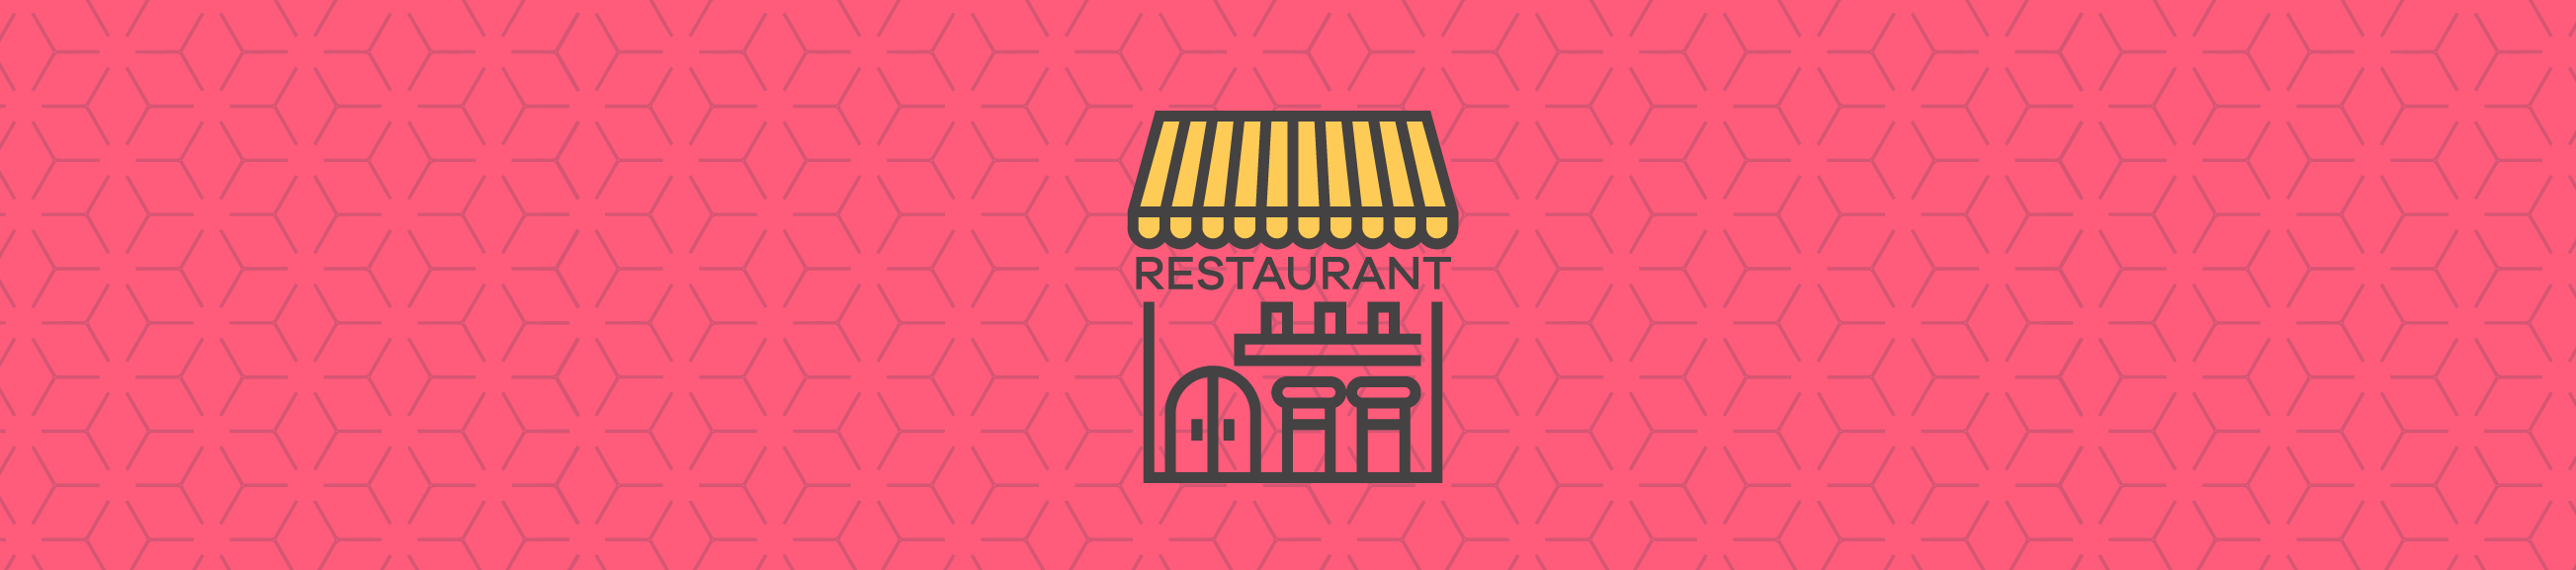 Cómo encontrar la localización perfecta para tu restaurante